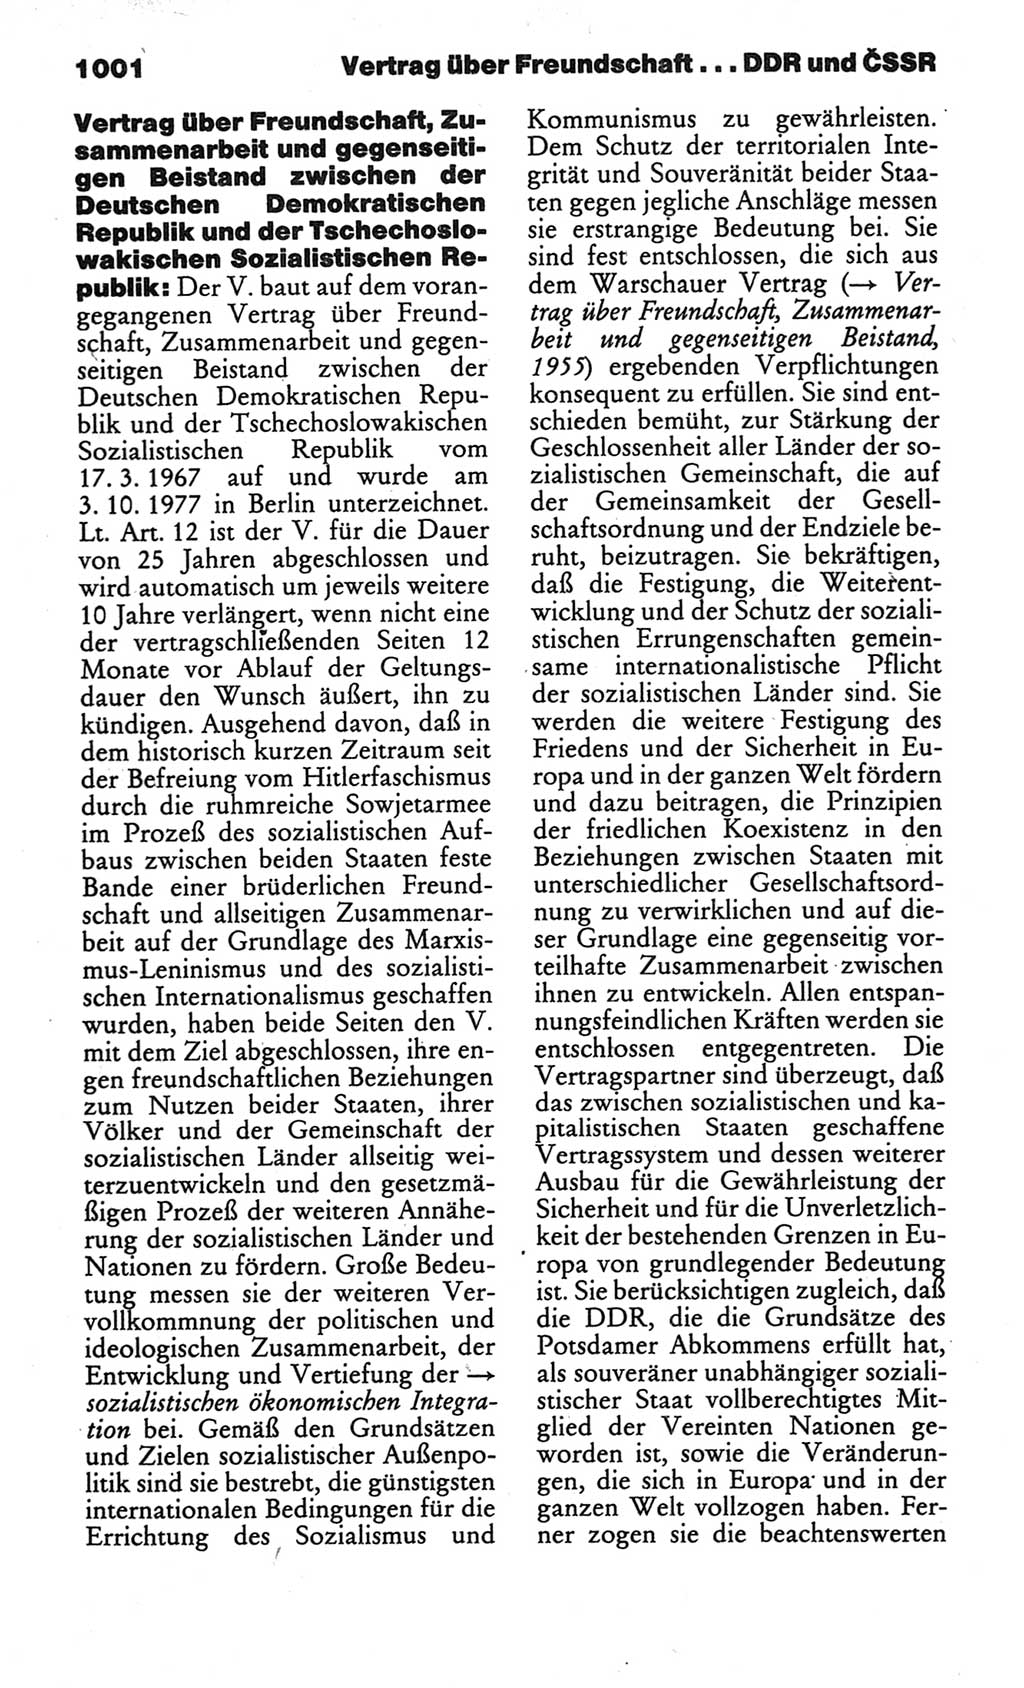 Kleines politisches Wörterbuch [Deutsche Demokratische Republik (DDR)] 1986, Seite 1001 (Kl. pol. Wb. DDR 1986, S. 1001)